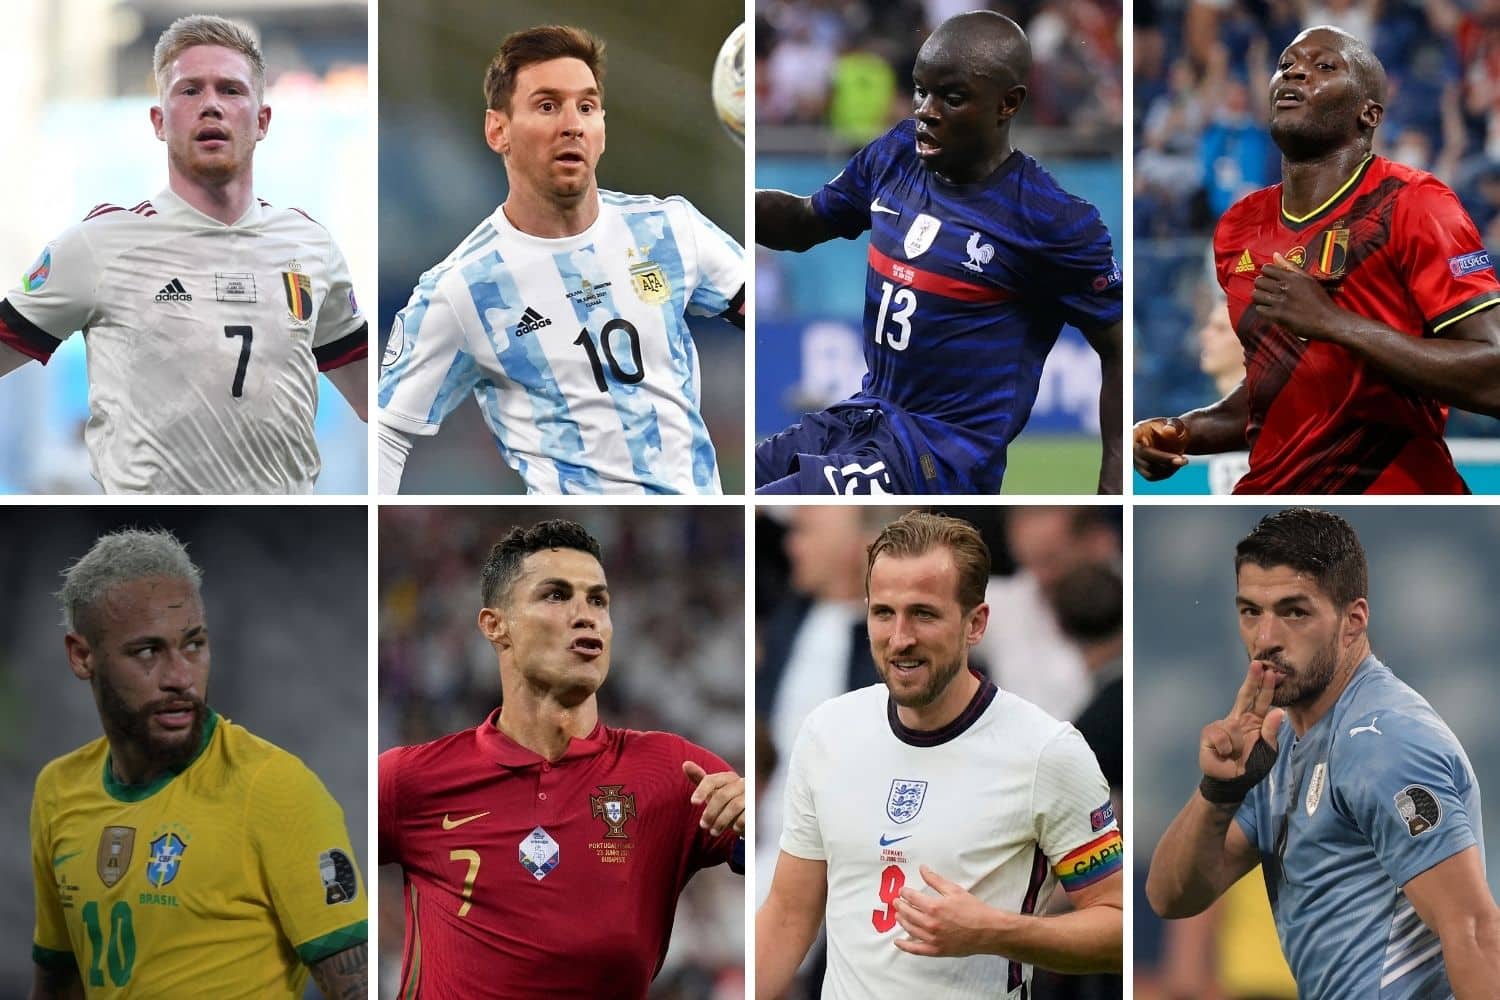 Melhores jogadores de futebol do mundo: saiba quais são e onde jogam